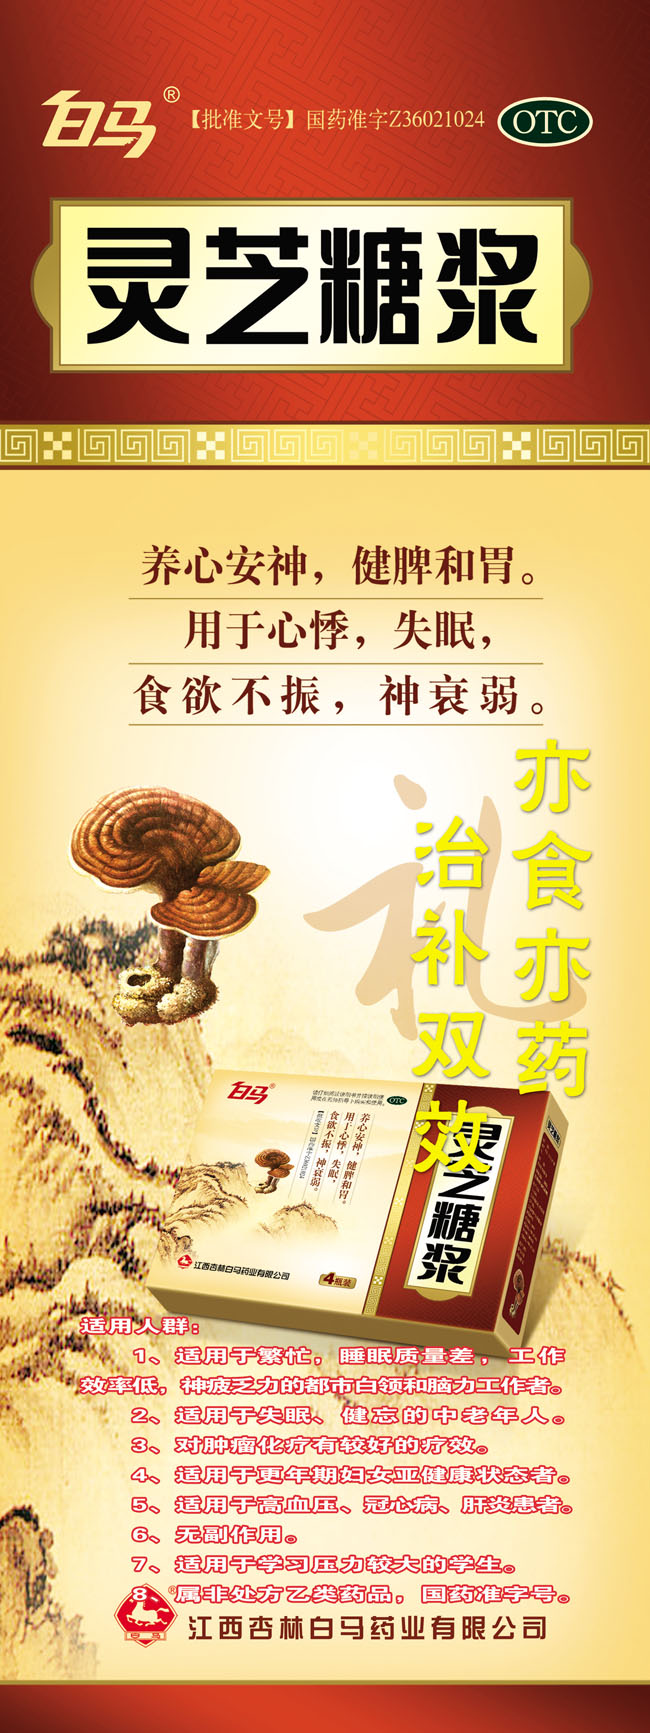 白马灵芝糖浆展板海报宣传PSD素材